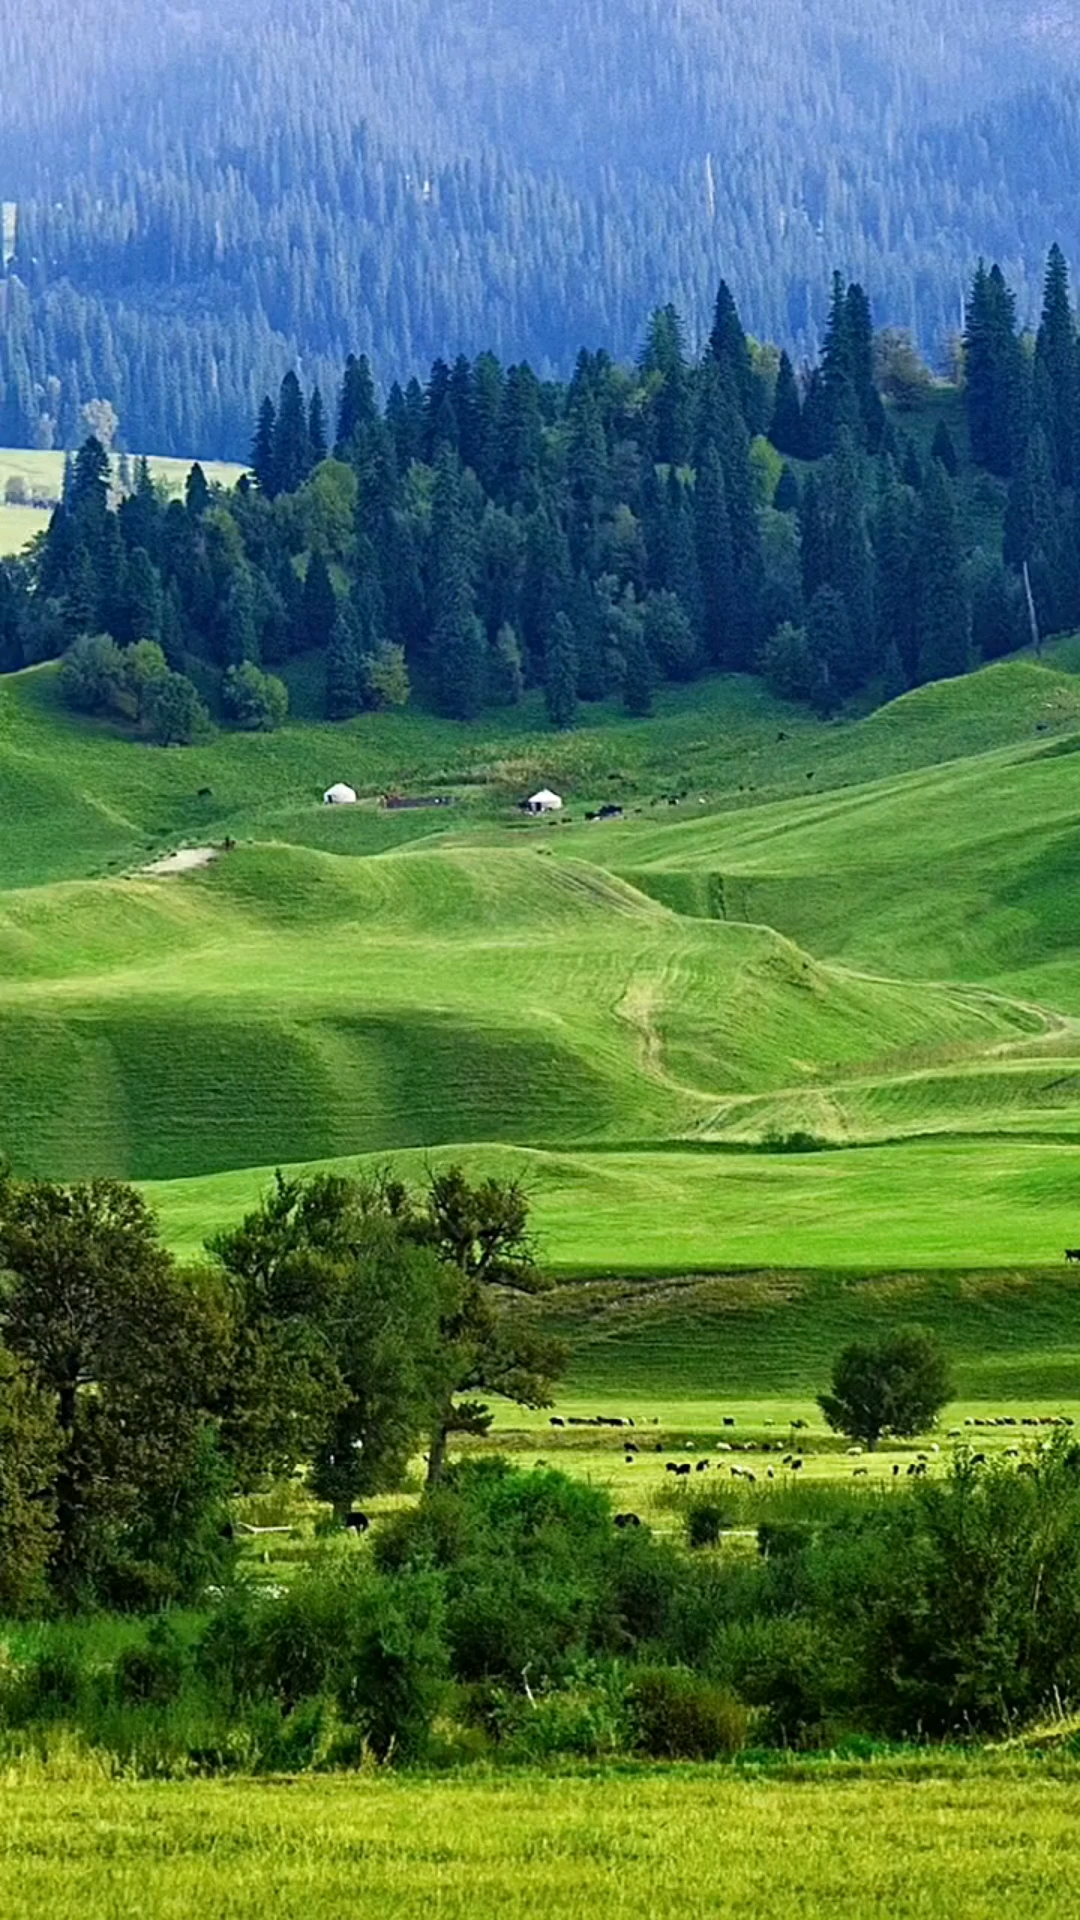 大美新疆,一山一水都是美景,蓝天白云,绿草如茵